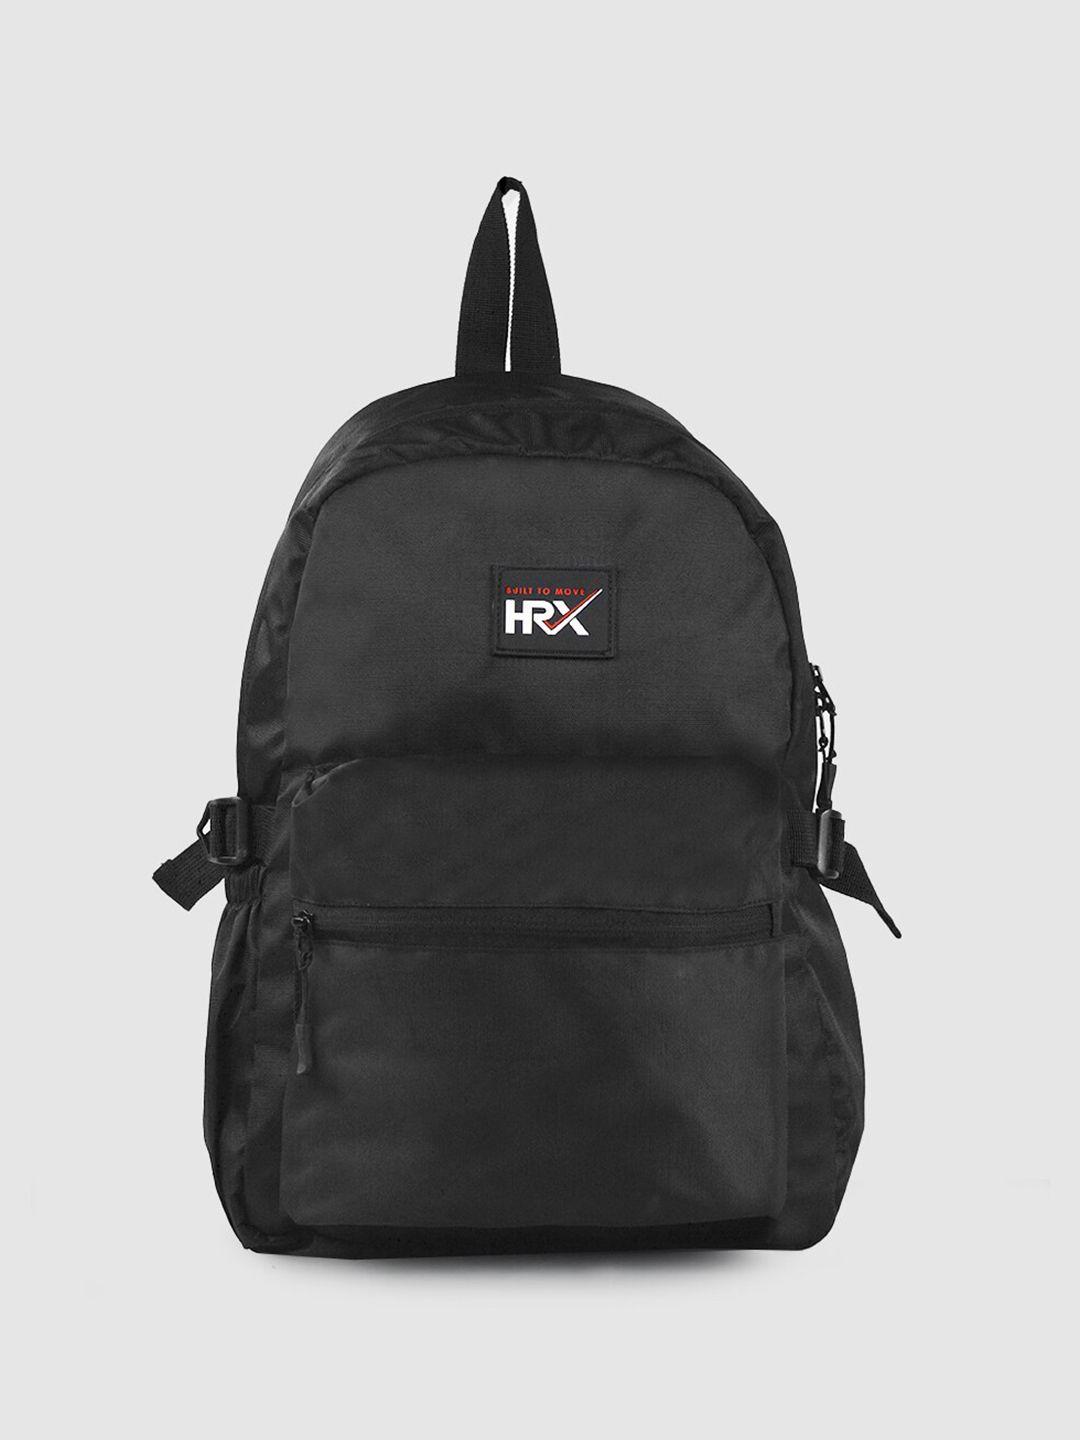 hrx-by-hrithik-roshan-unisex-black-backpack